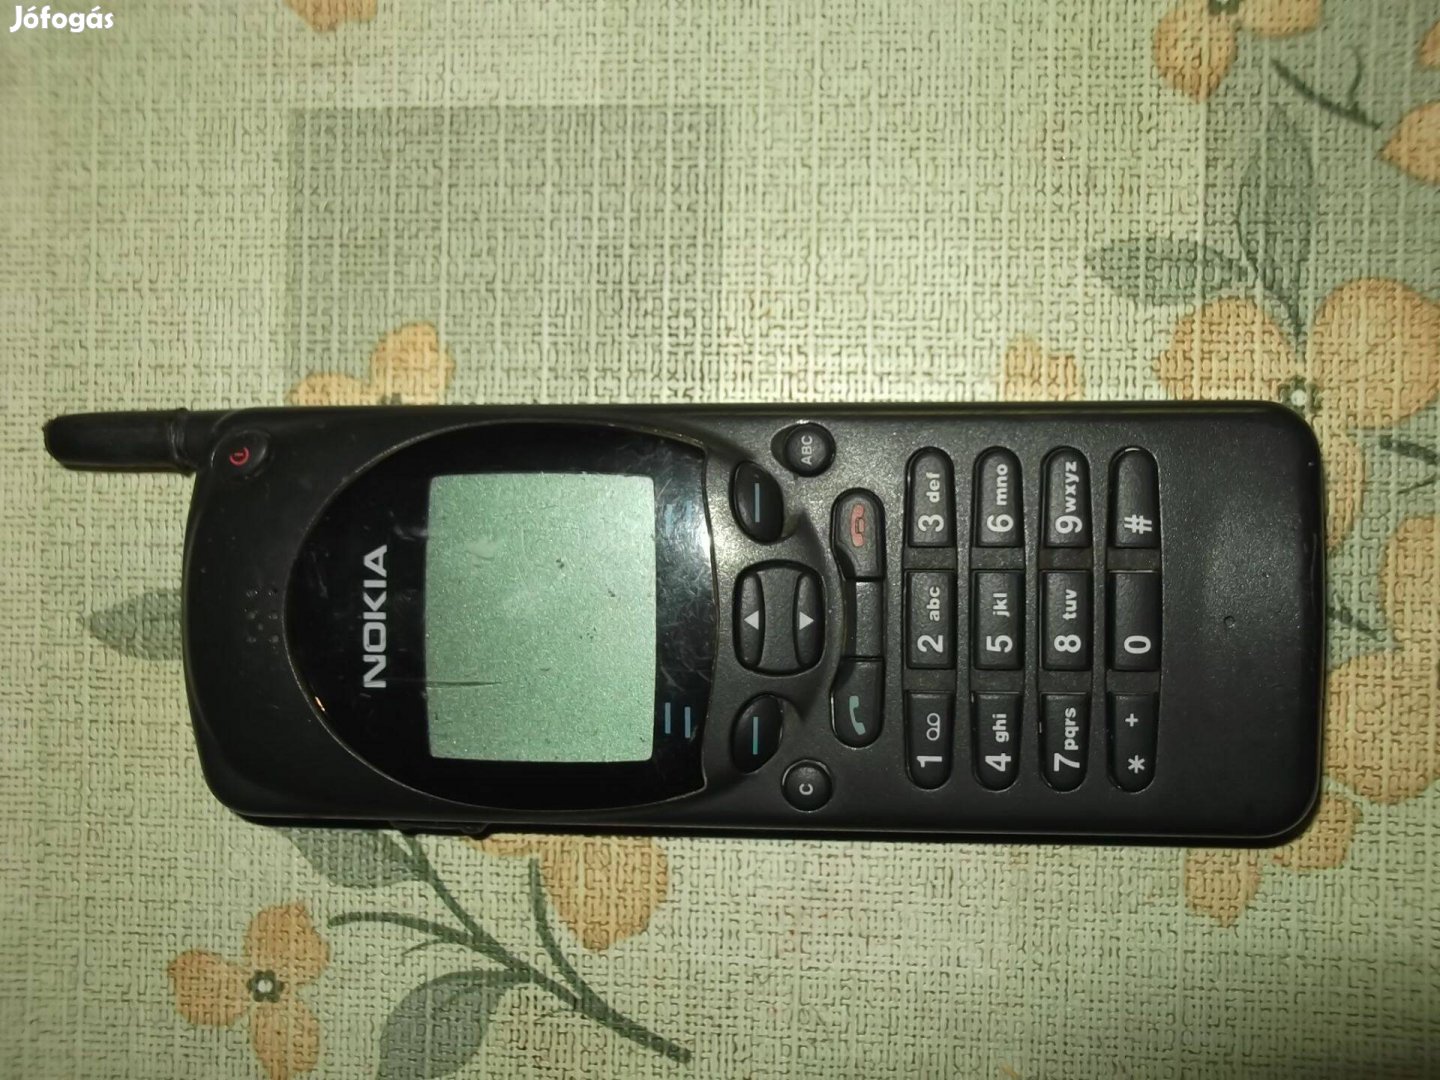 Eladó egy szép retro Nokia 2110 típusú mobiltelefon olcsón